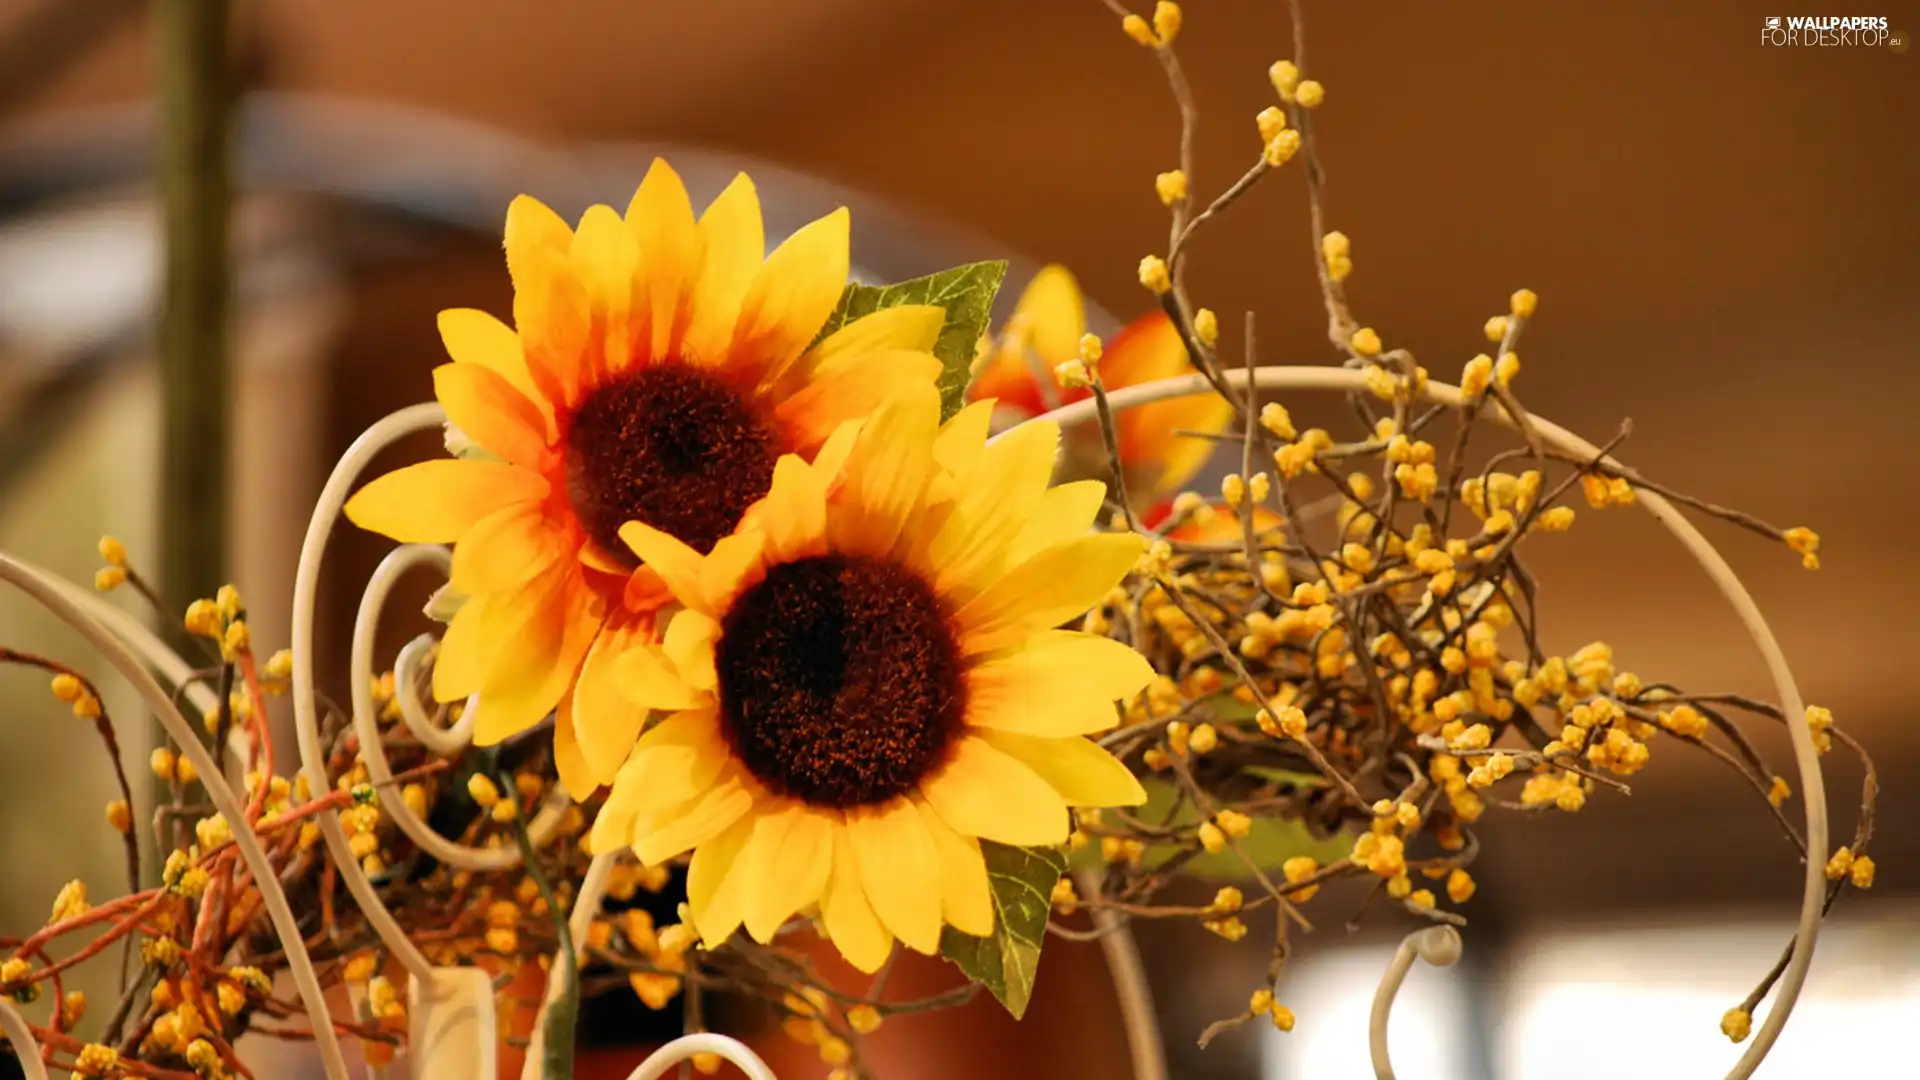 sunflowers, adoption